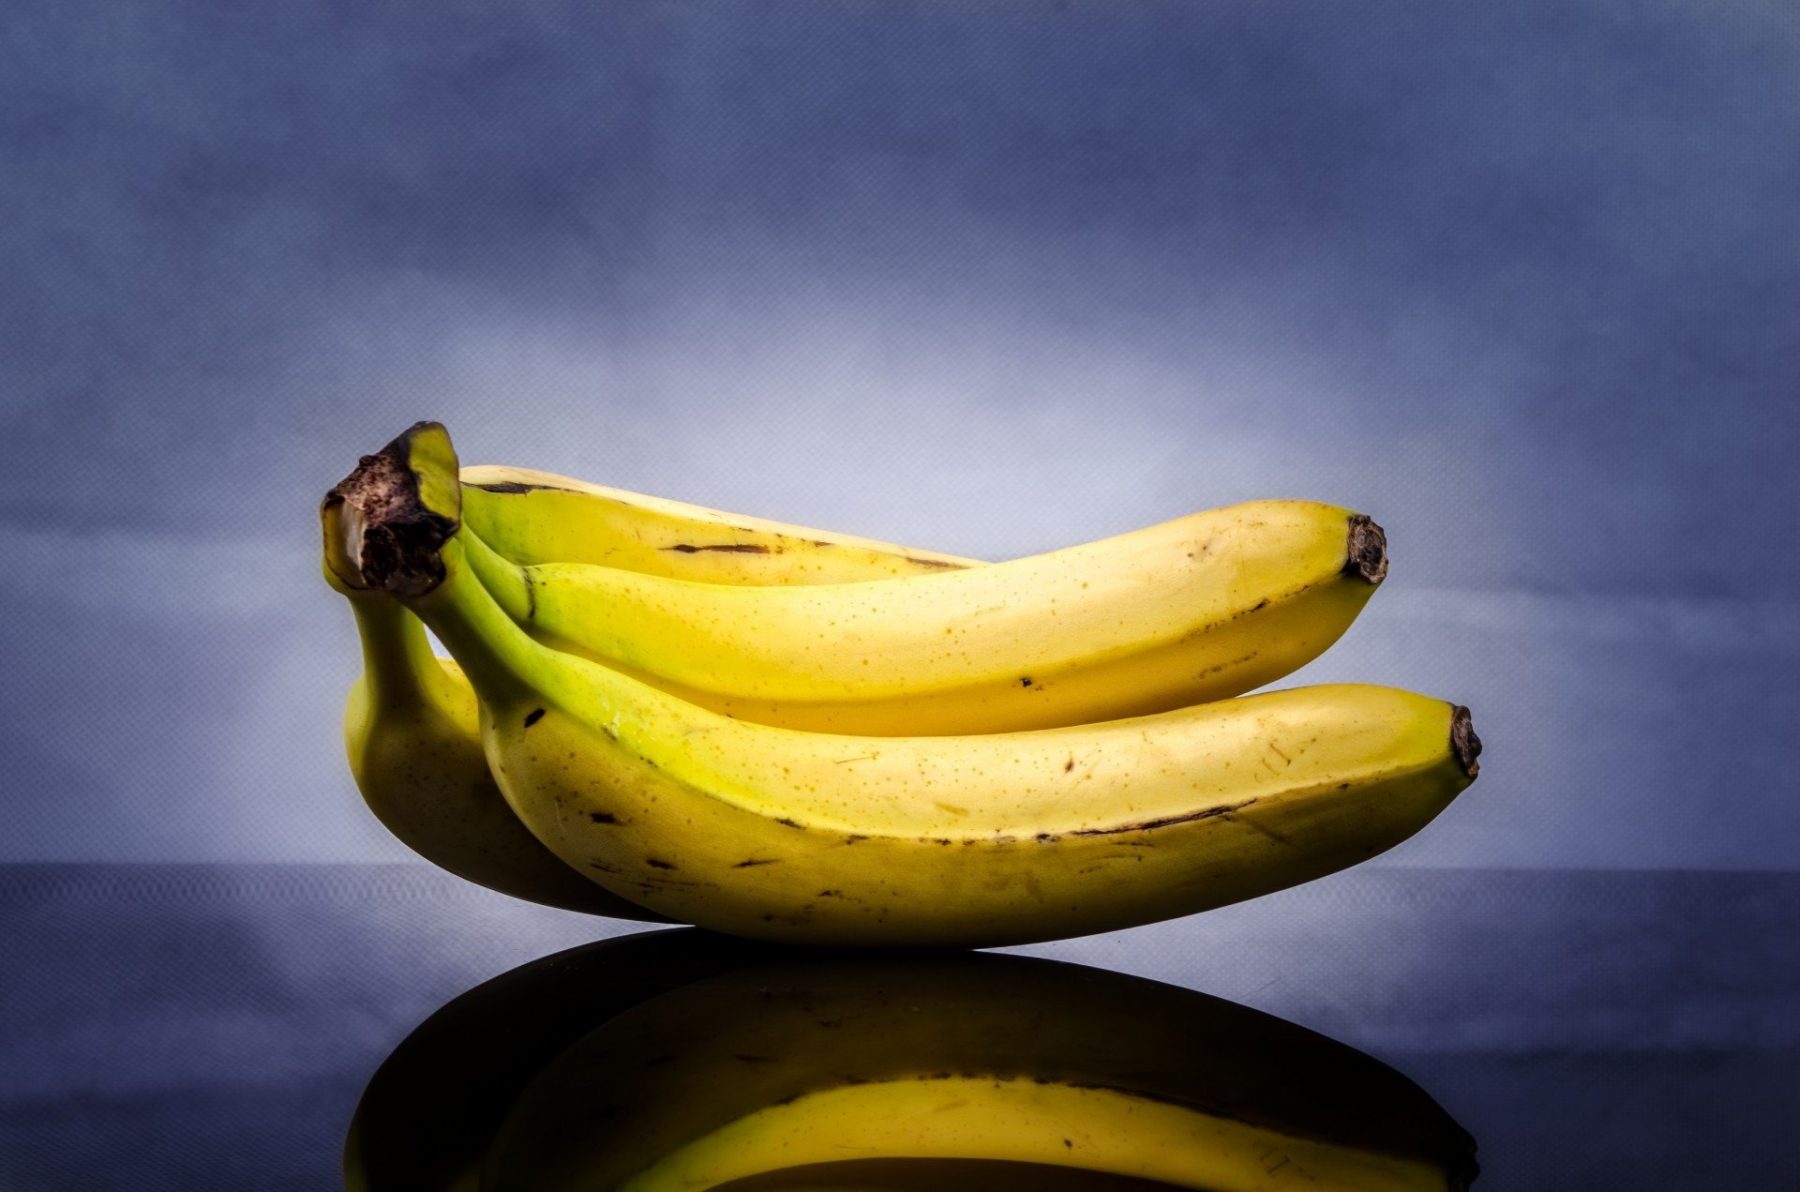 Μπανάνα ύπνος: Πώς μια μπανάνα πριν τον ύπνο μπορεί να σας βοηθήσει να κοιμηθείτε καλύτερα;